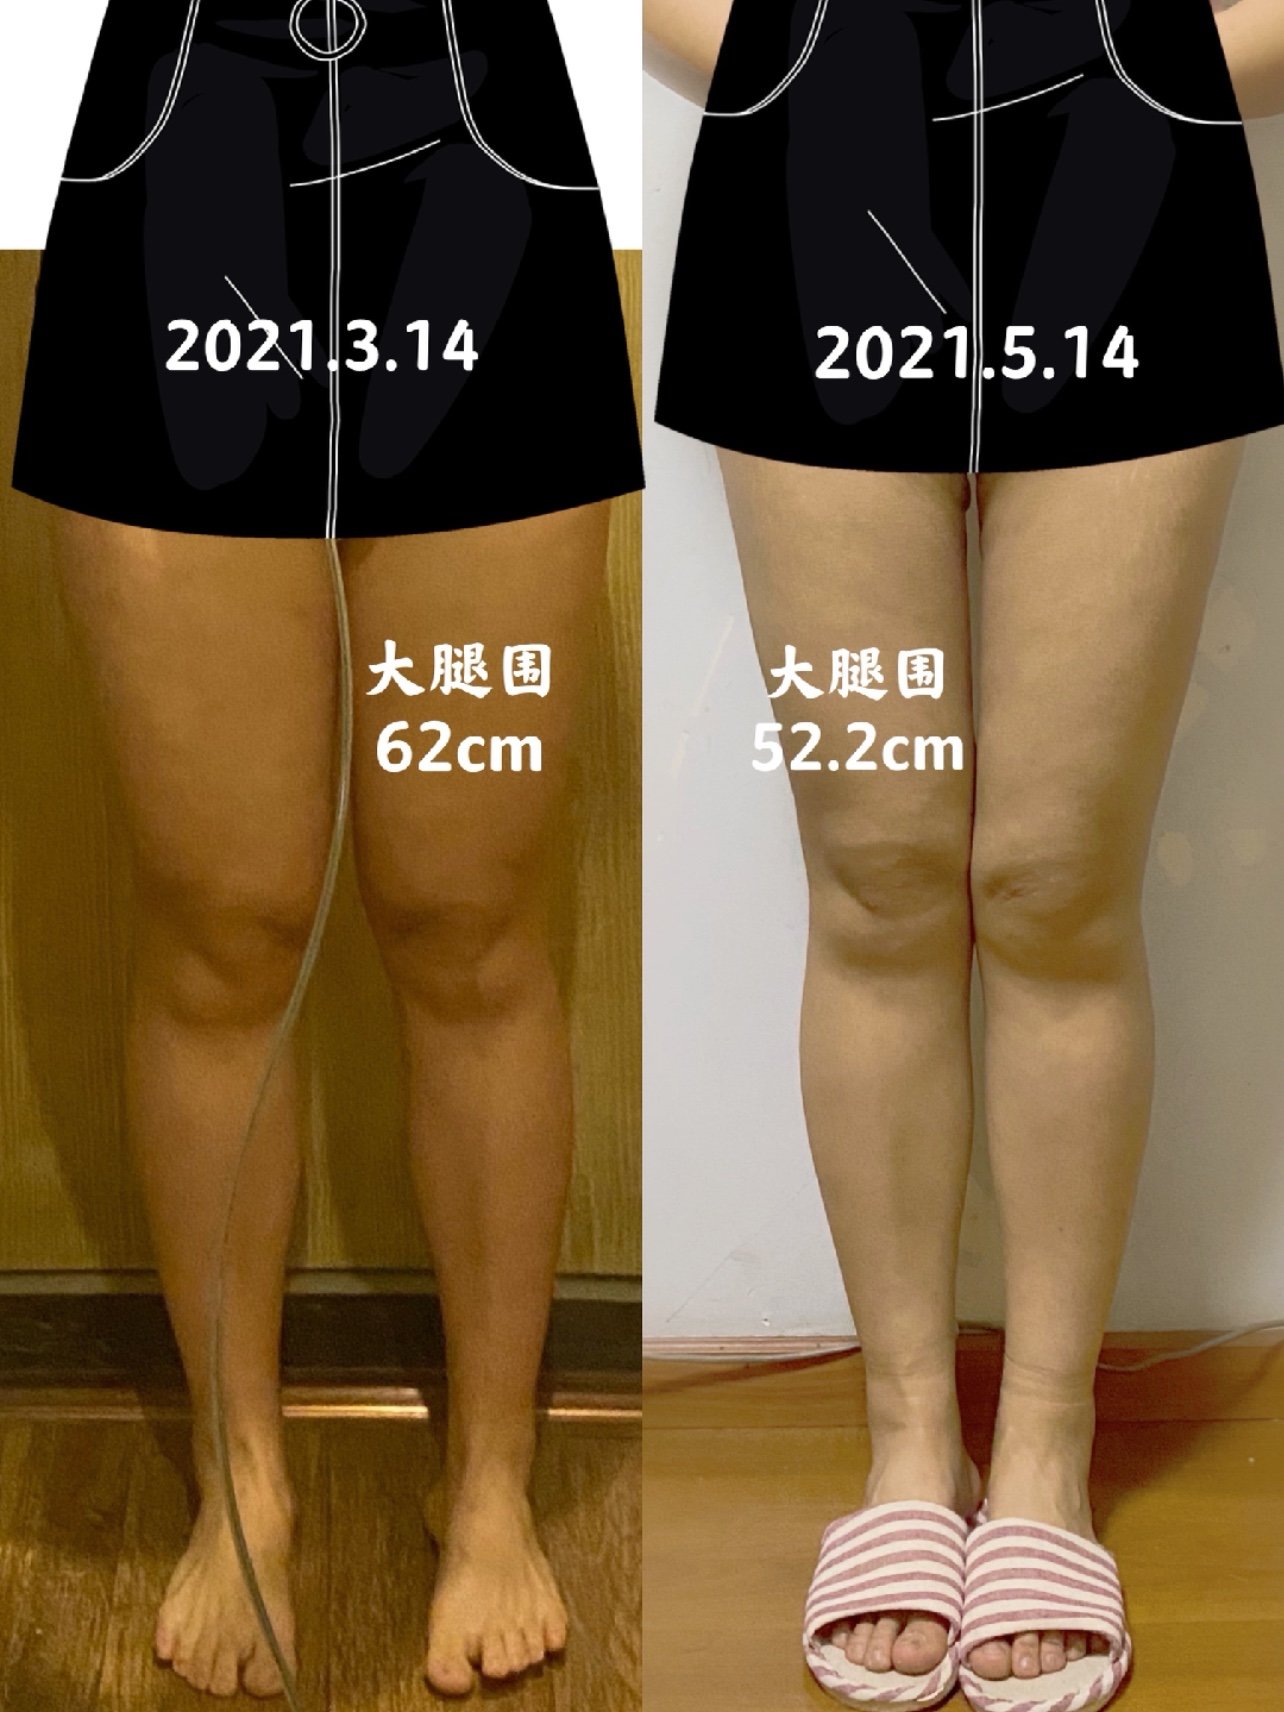 14 手术内容:黄金微雕大腿环吸 术前情况 身高:170cm 体重:70kg 大腿